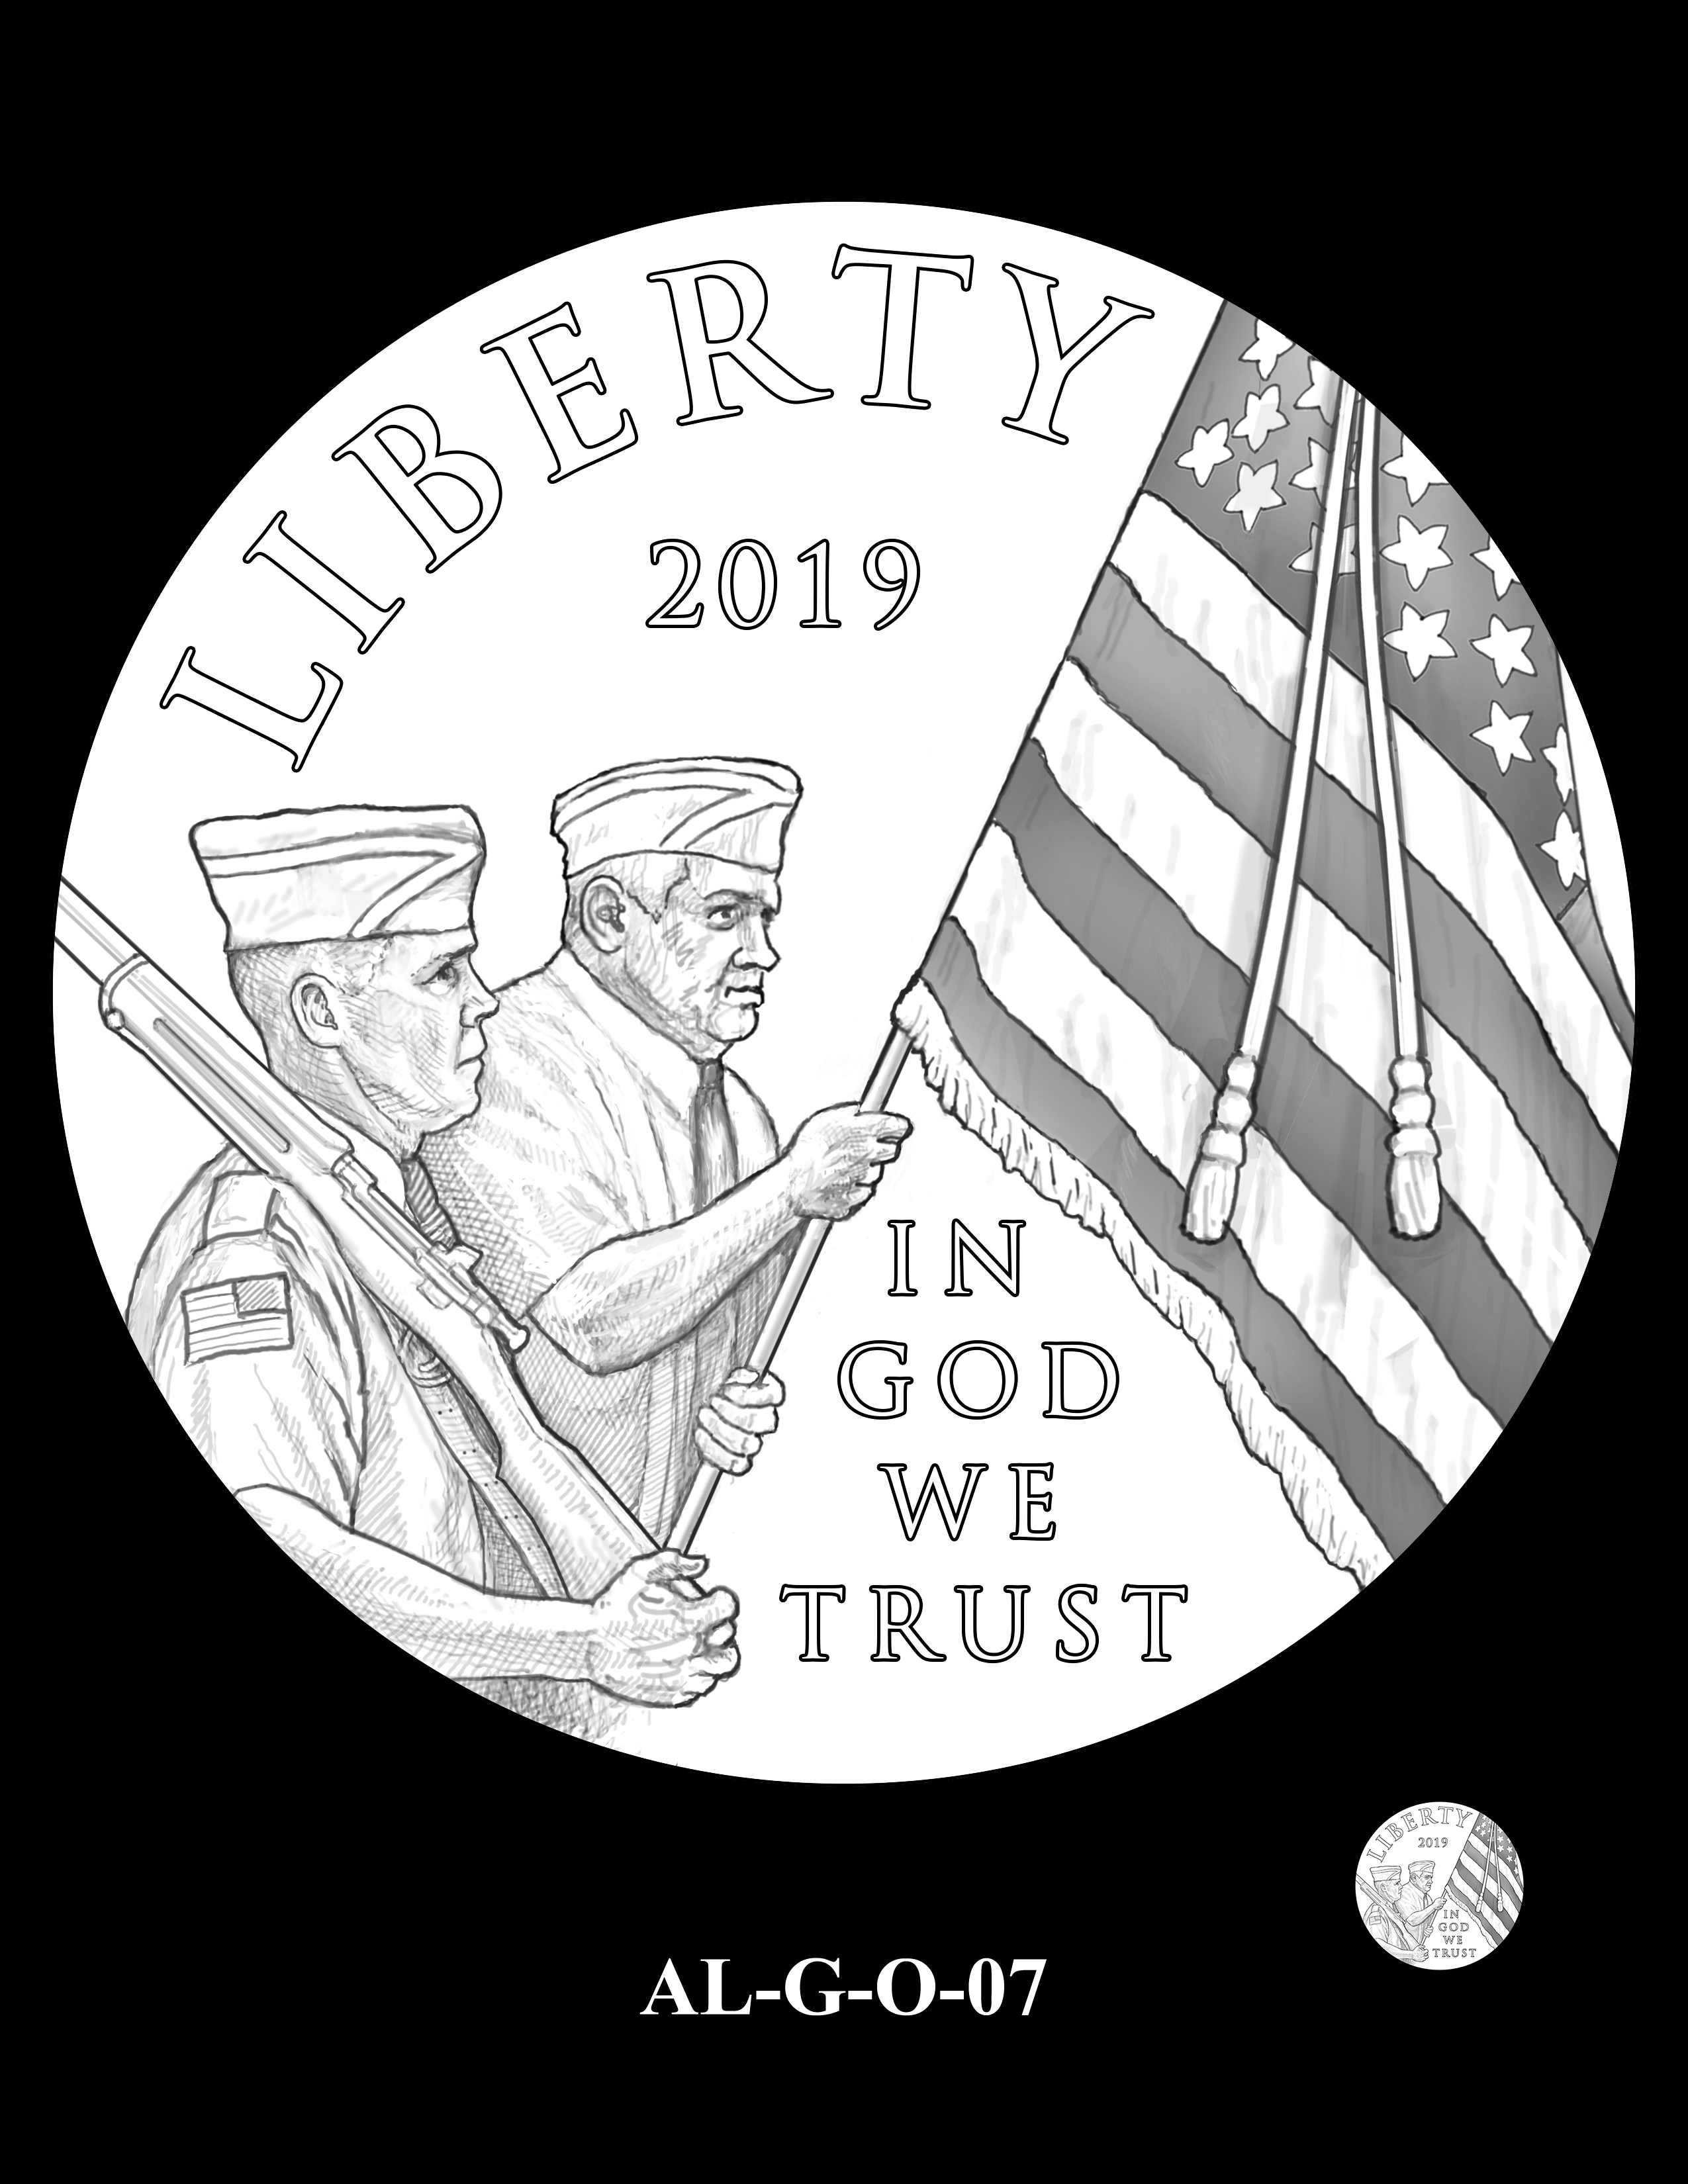 AL-G-O-07 -- 2019 American Legion 100th Anniversary Commemorative Coin Program - Gold Obverse